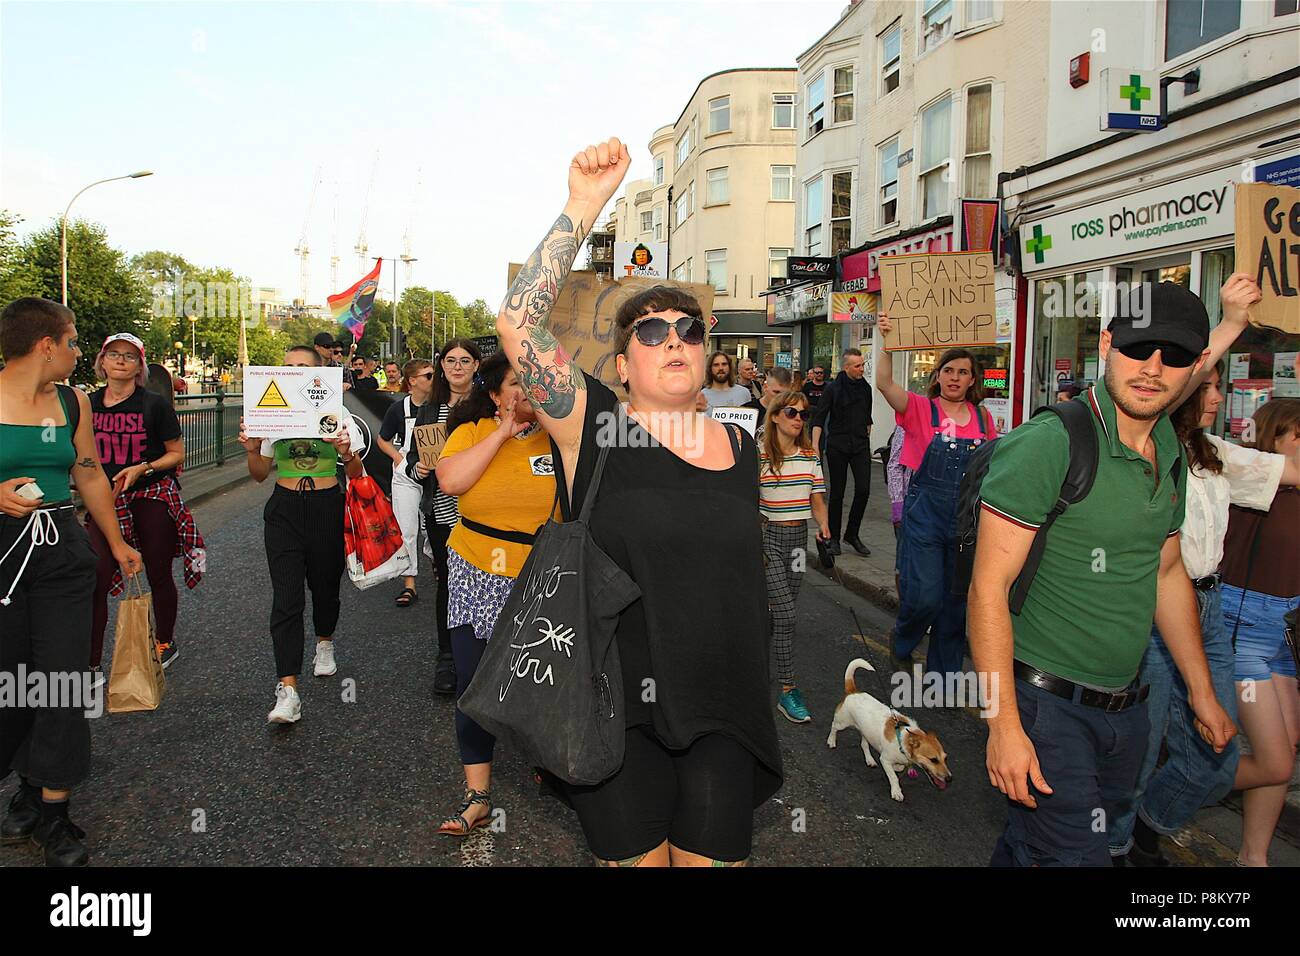 Brighton, UK. 12. Juli 2018. Mit Präsident Donald Trump in England, einige Leute war es wichtig, einen Ständer und Protest und März durch Brighton zu machen. Quelle: Rupert Rivett/Alamy leben Nachrichten Stockfoto